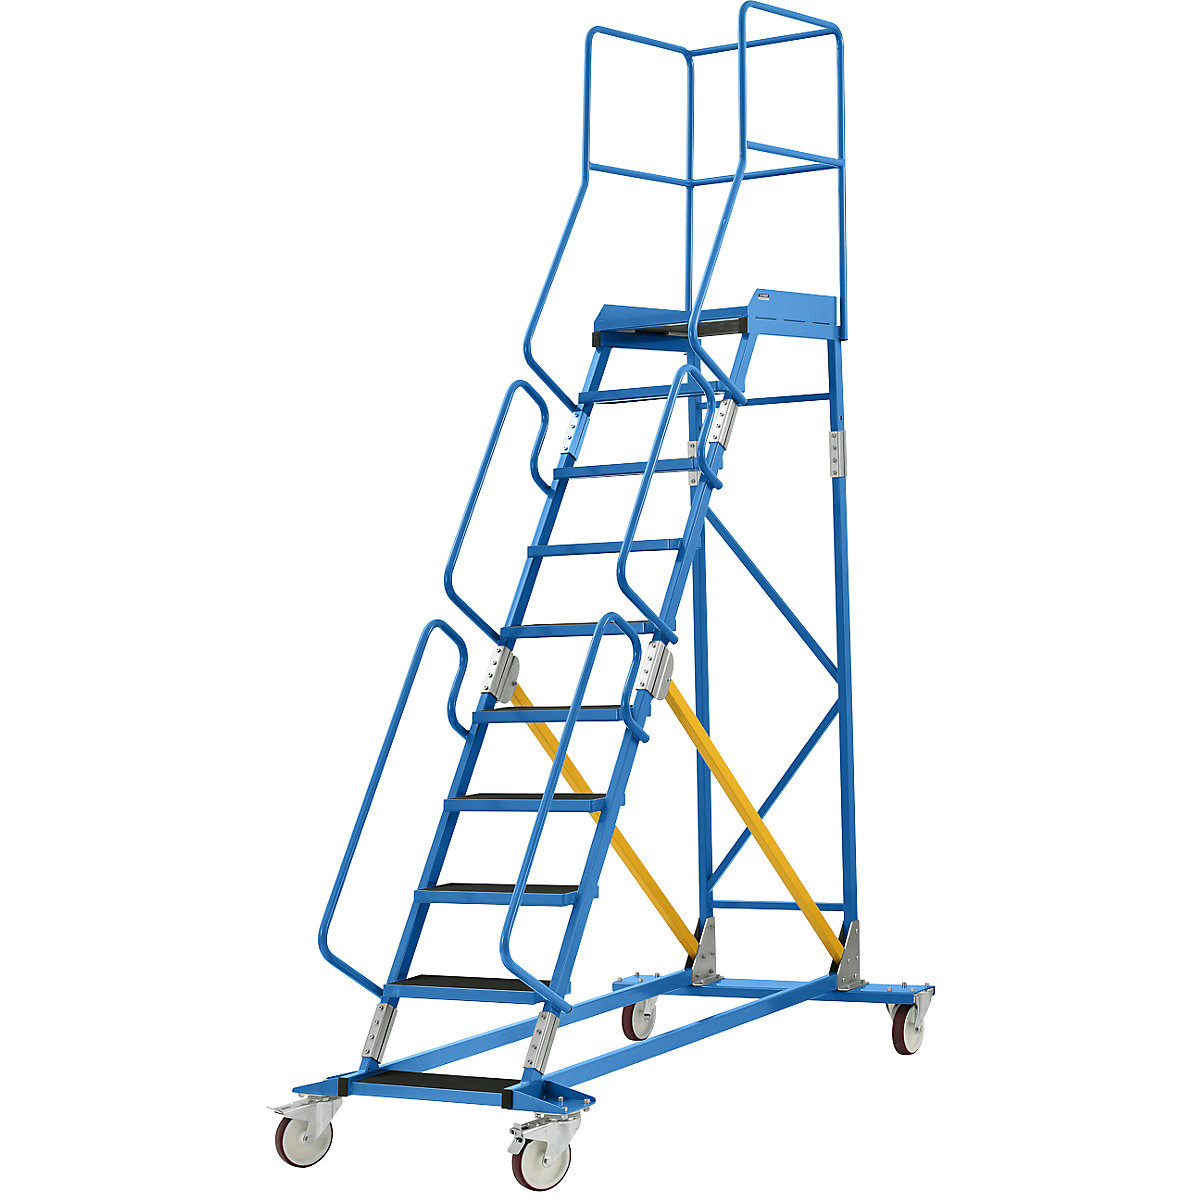 Escada de plataforma móvel – eurokraft pro, encaixe de degrau em borracha estriada, 10 degraus-25